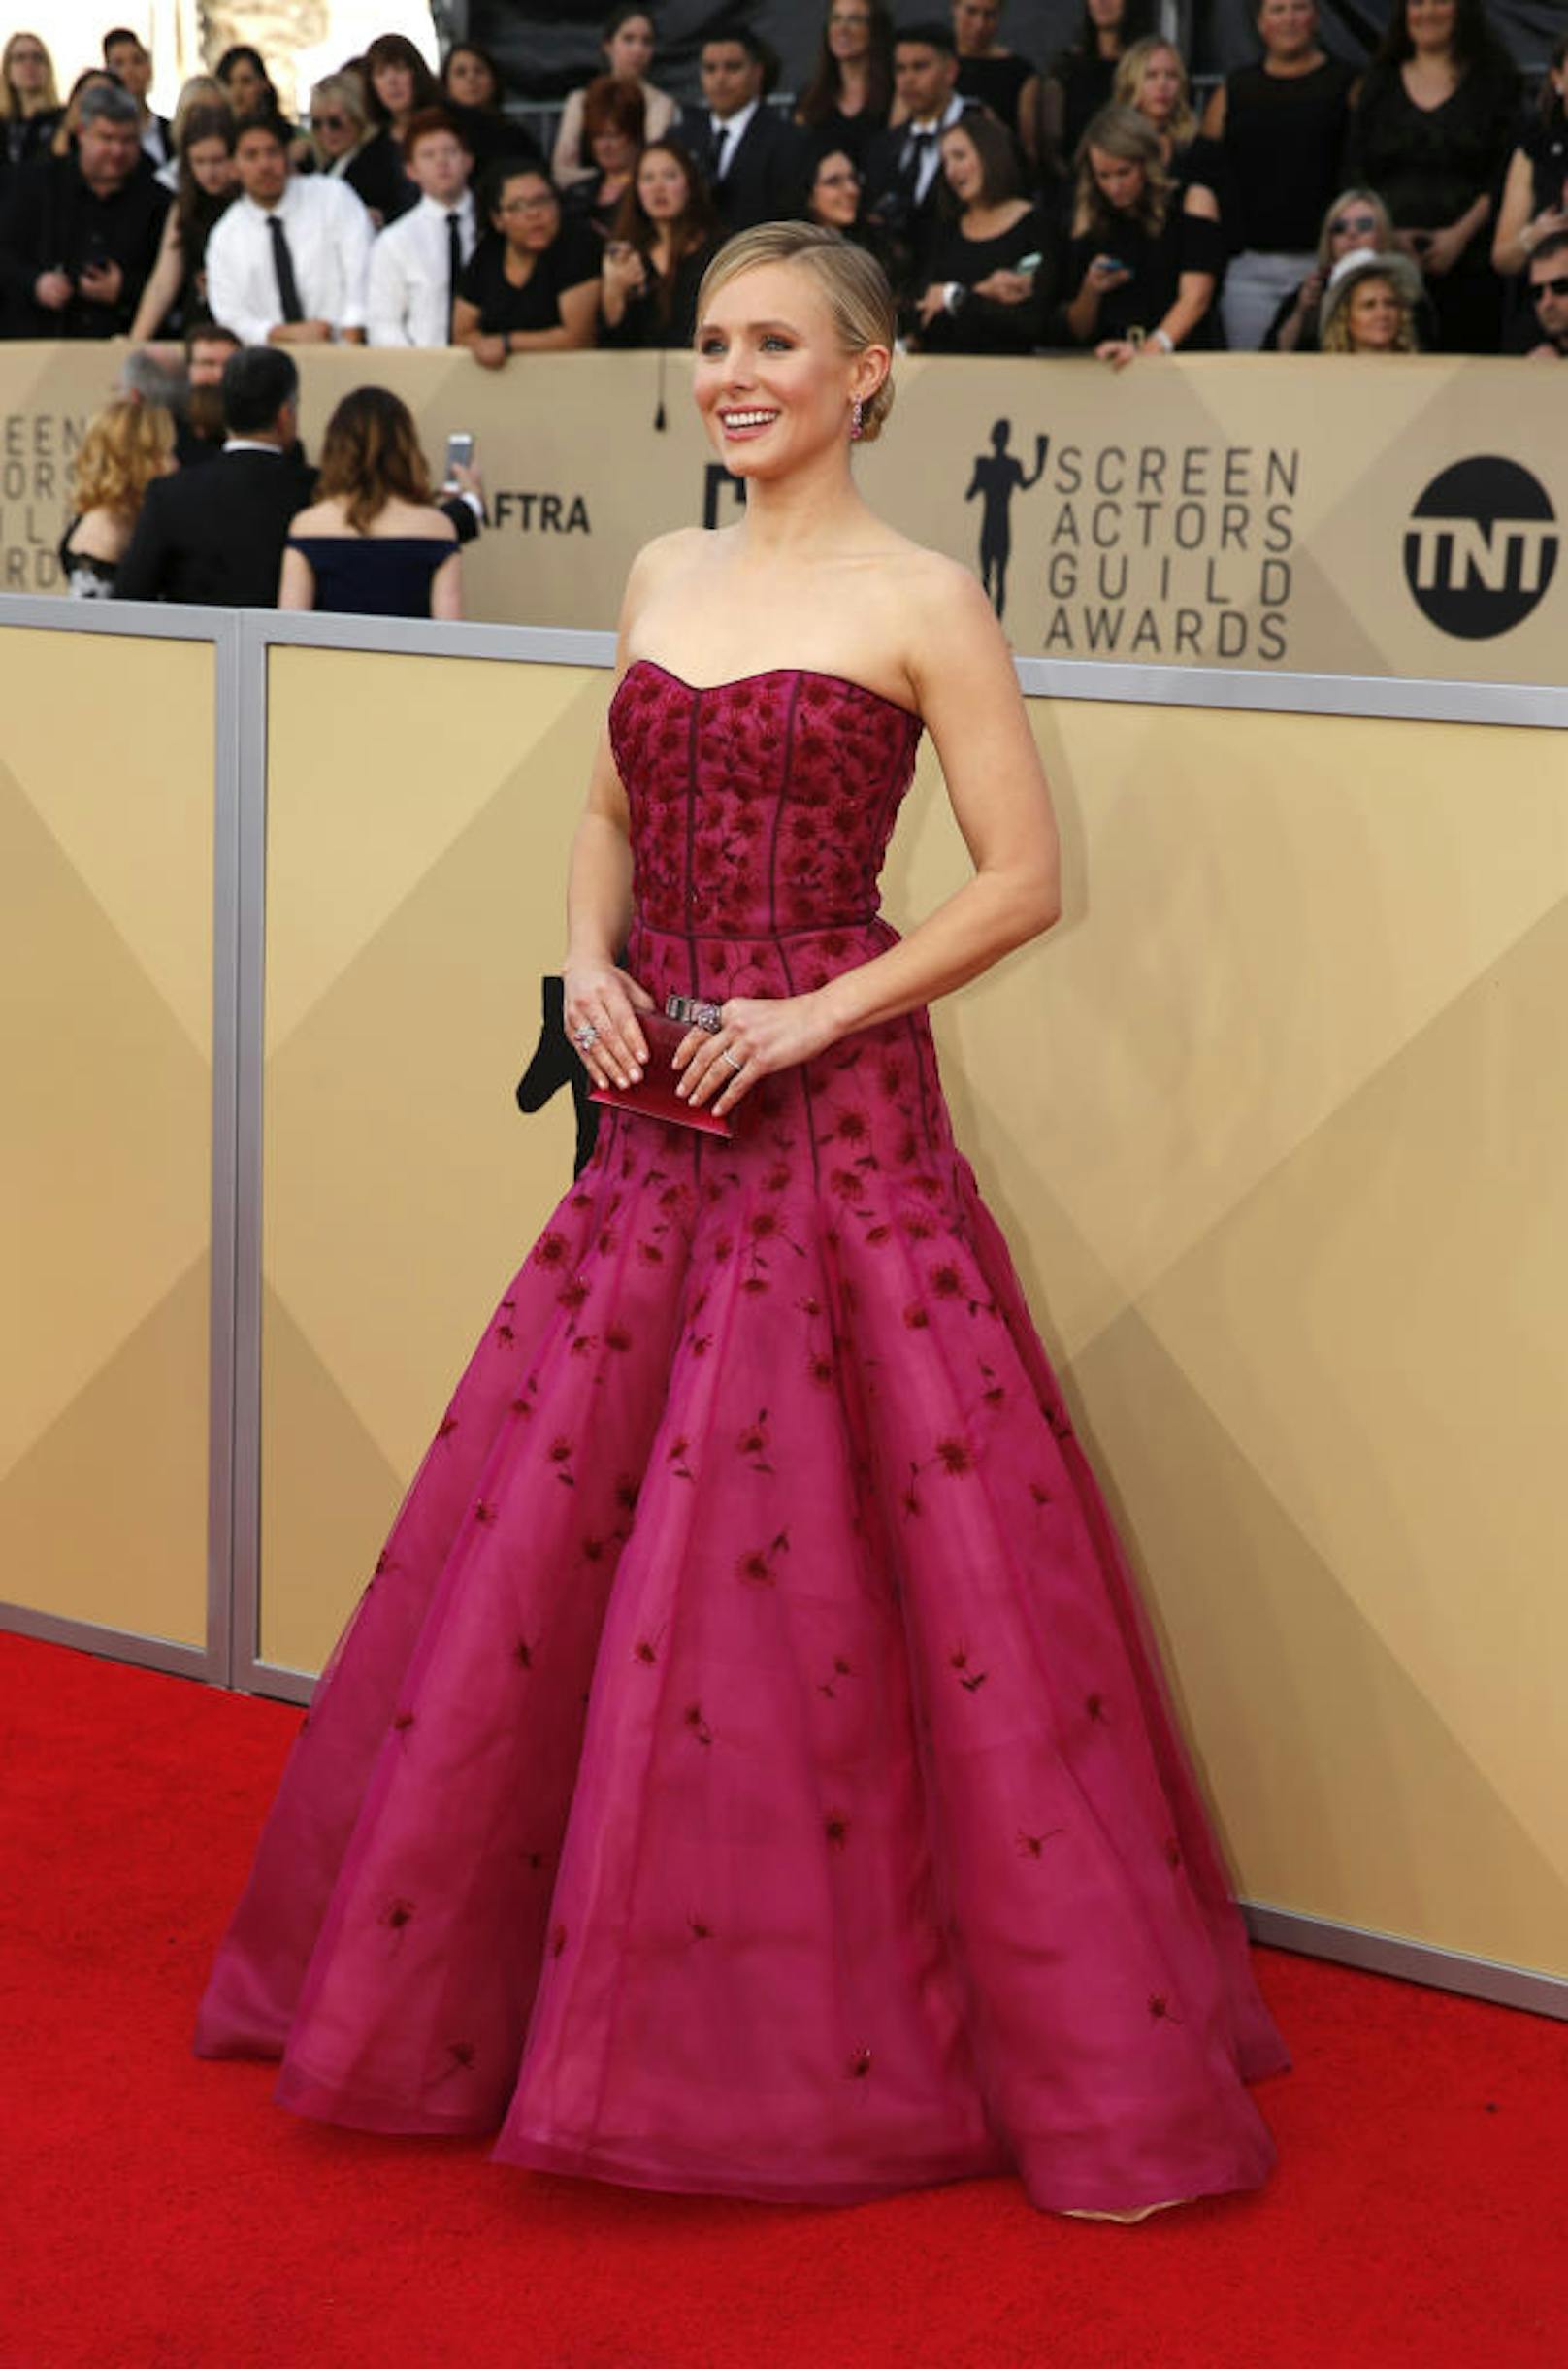 Grün war aber definitiv nicht die einzige Farbe, die am roten Teppich der SAG Awards 2018 zu sehen war. Die Gastgeberin des Abends <b>Kristen Bell </b>strahlte in Pink von J. Mendel und folgte damit dem wohl auffälligsten Trend der Preisverleihung.